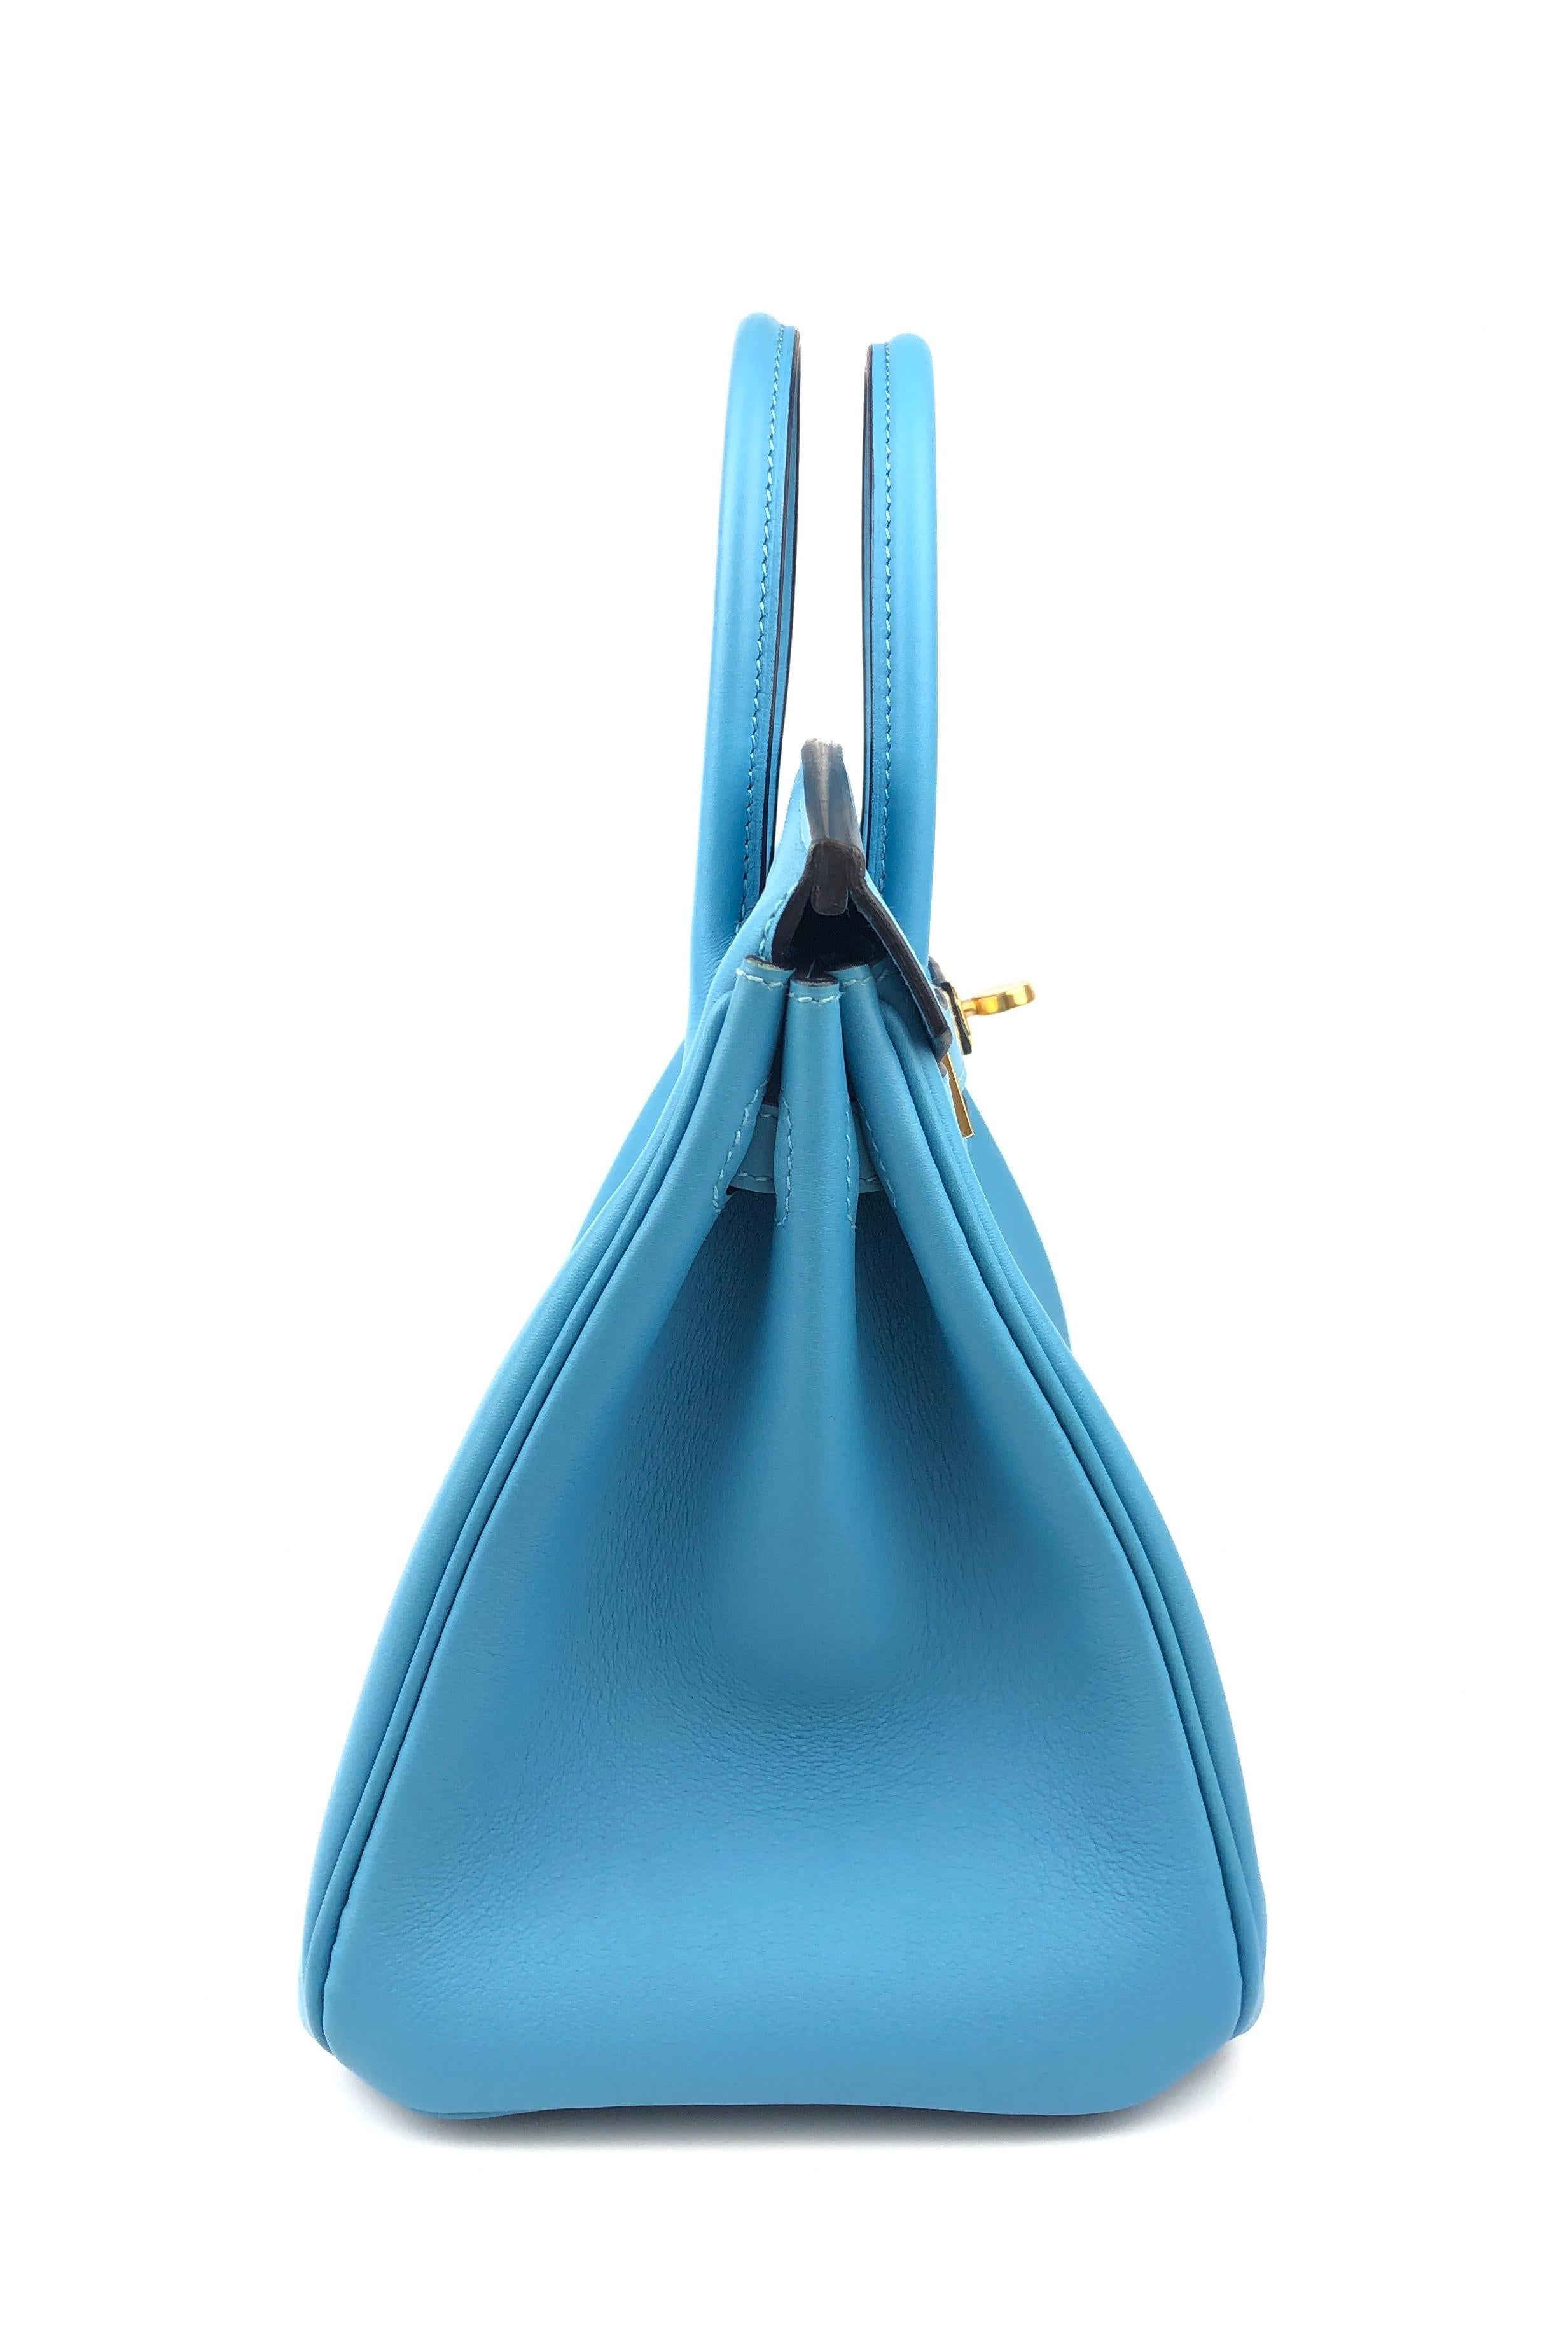 Hermes Birkin 25 Blue Bleu du Nord Leather Handbag Bag Gold Hardware RARE 2